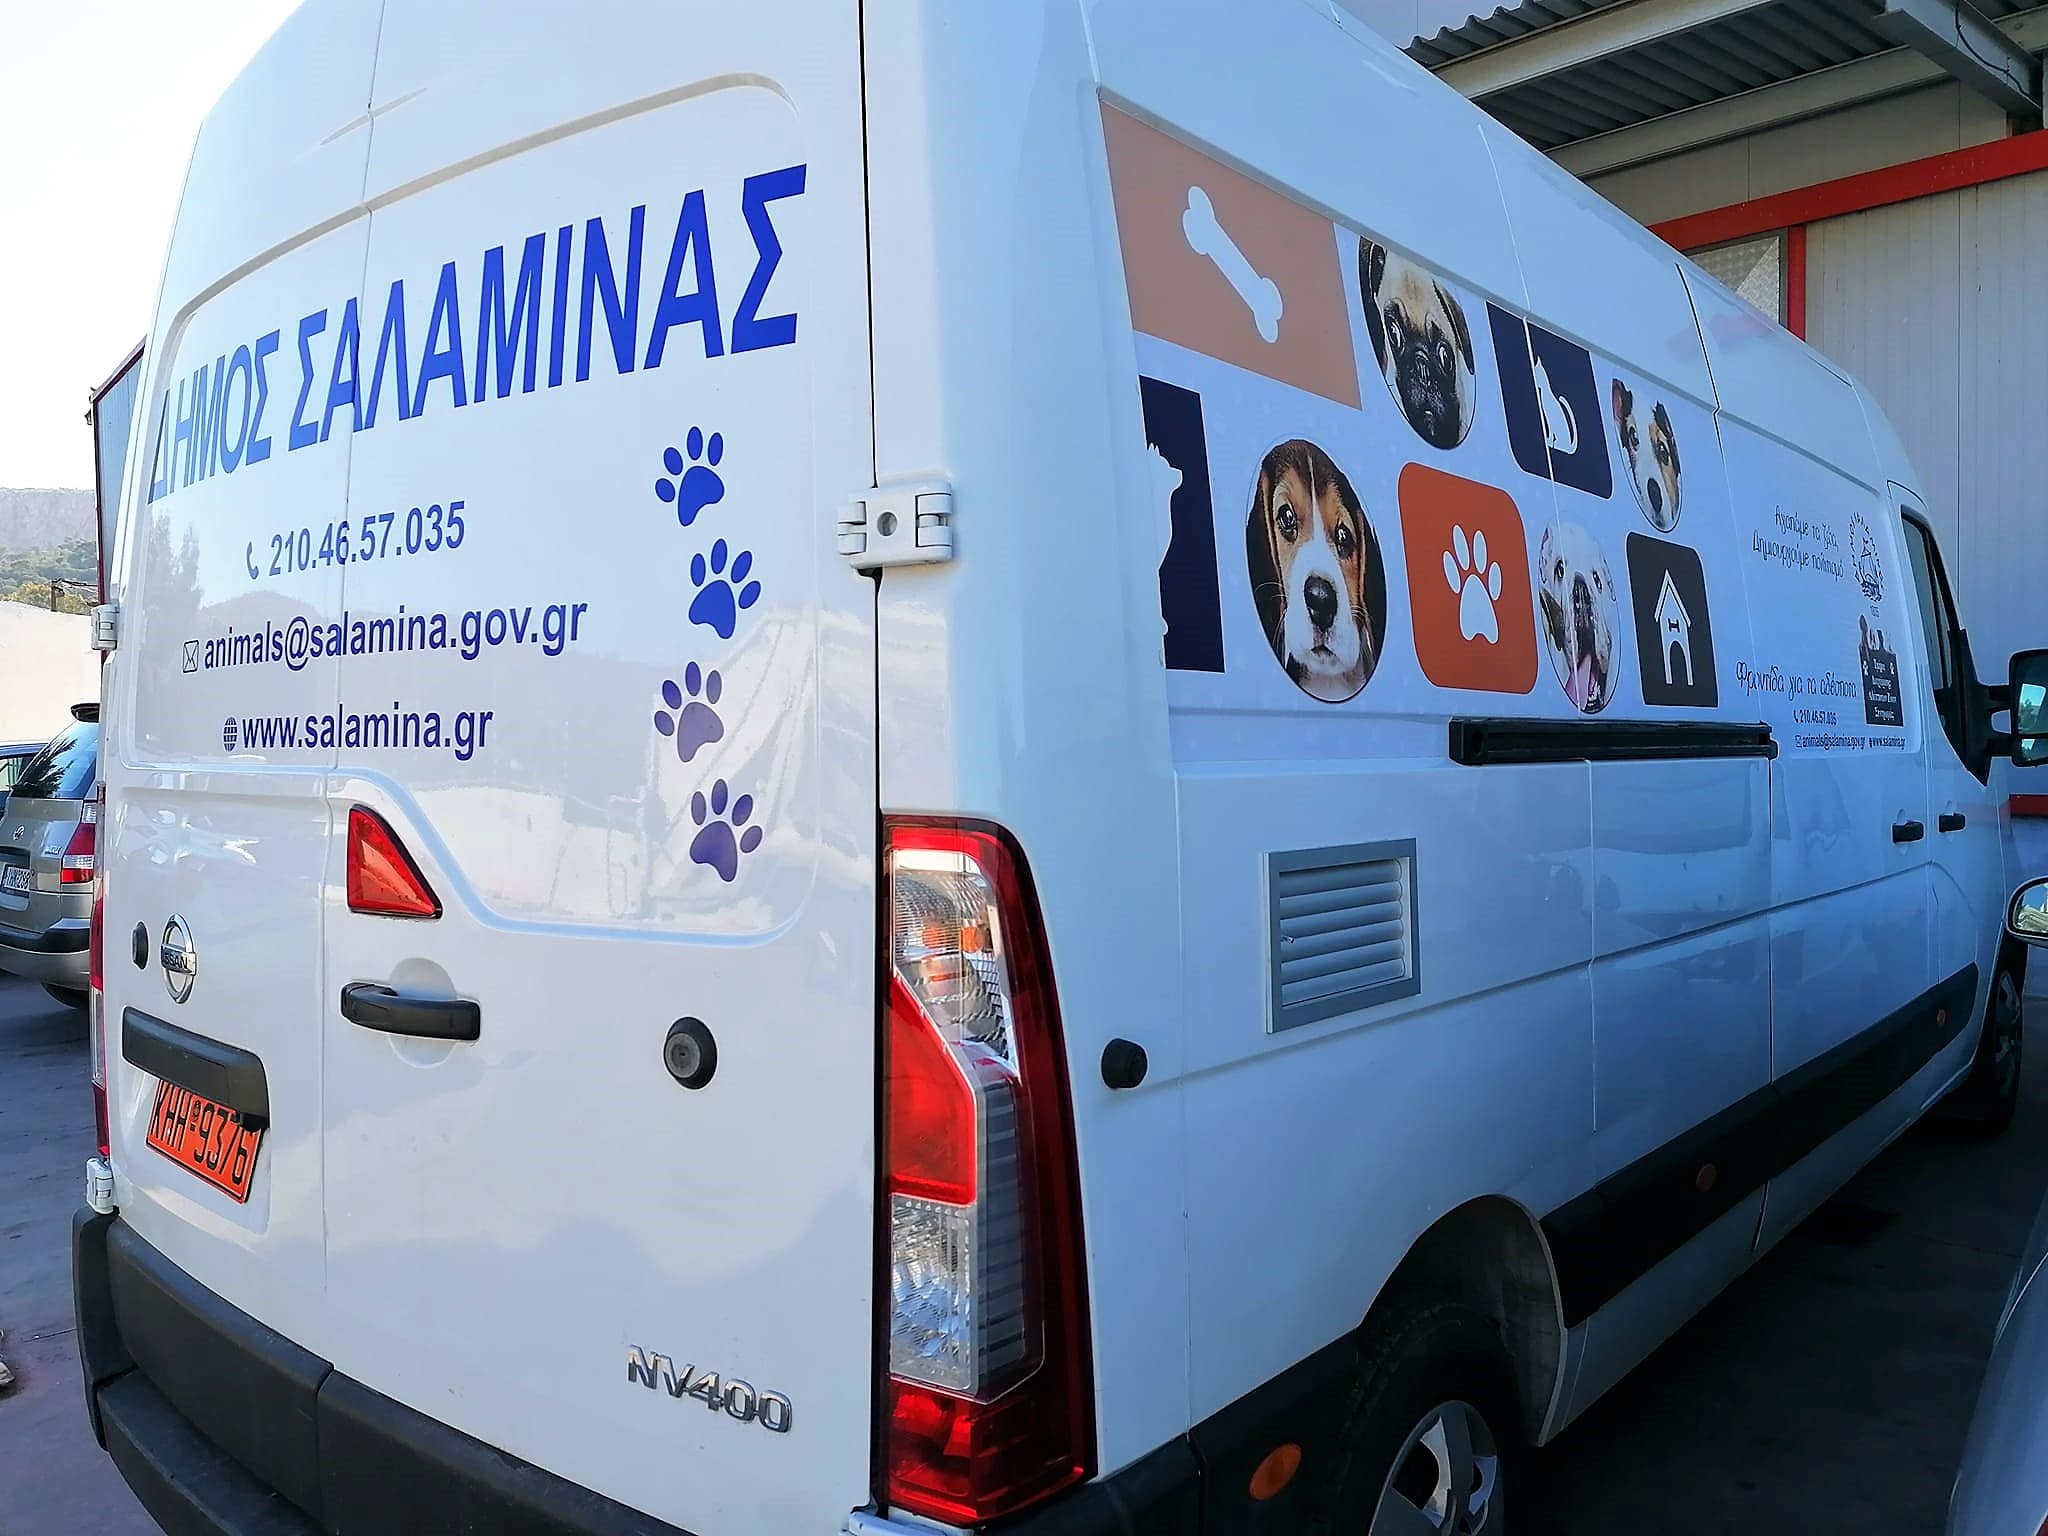 Ο δήμος Σαλαμίνας απέκτησε ένα υπερσύγχρονο ασθενοφόρο για τα αδέσποτα ζώα